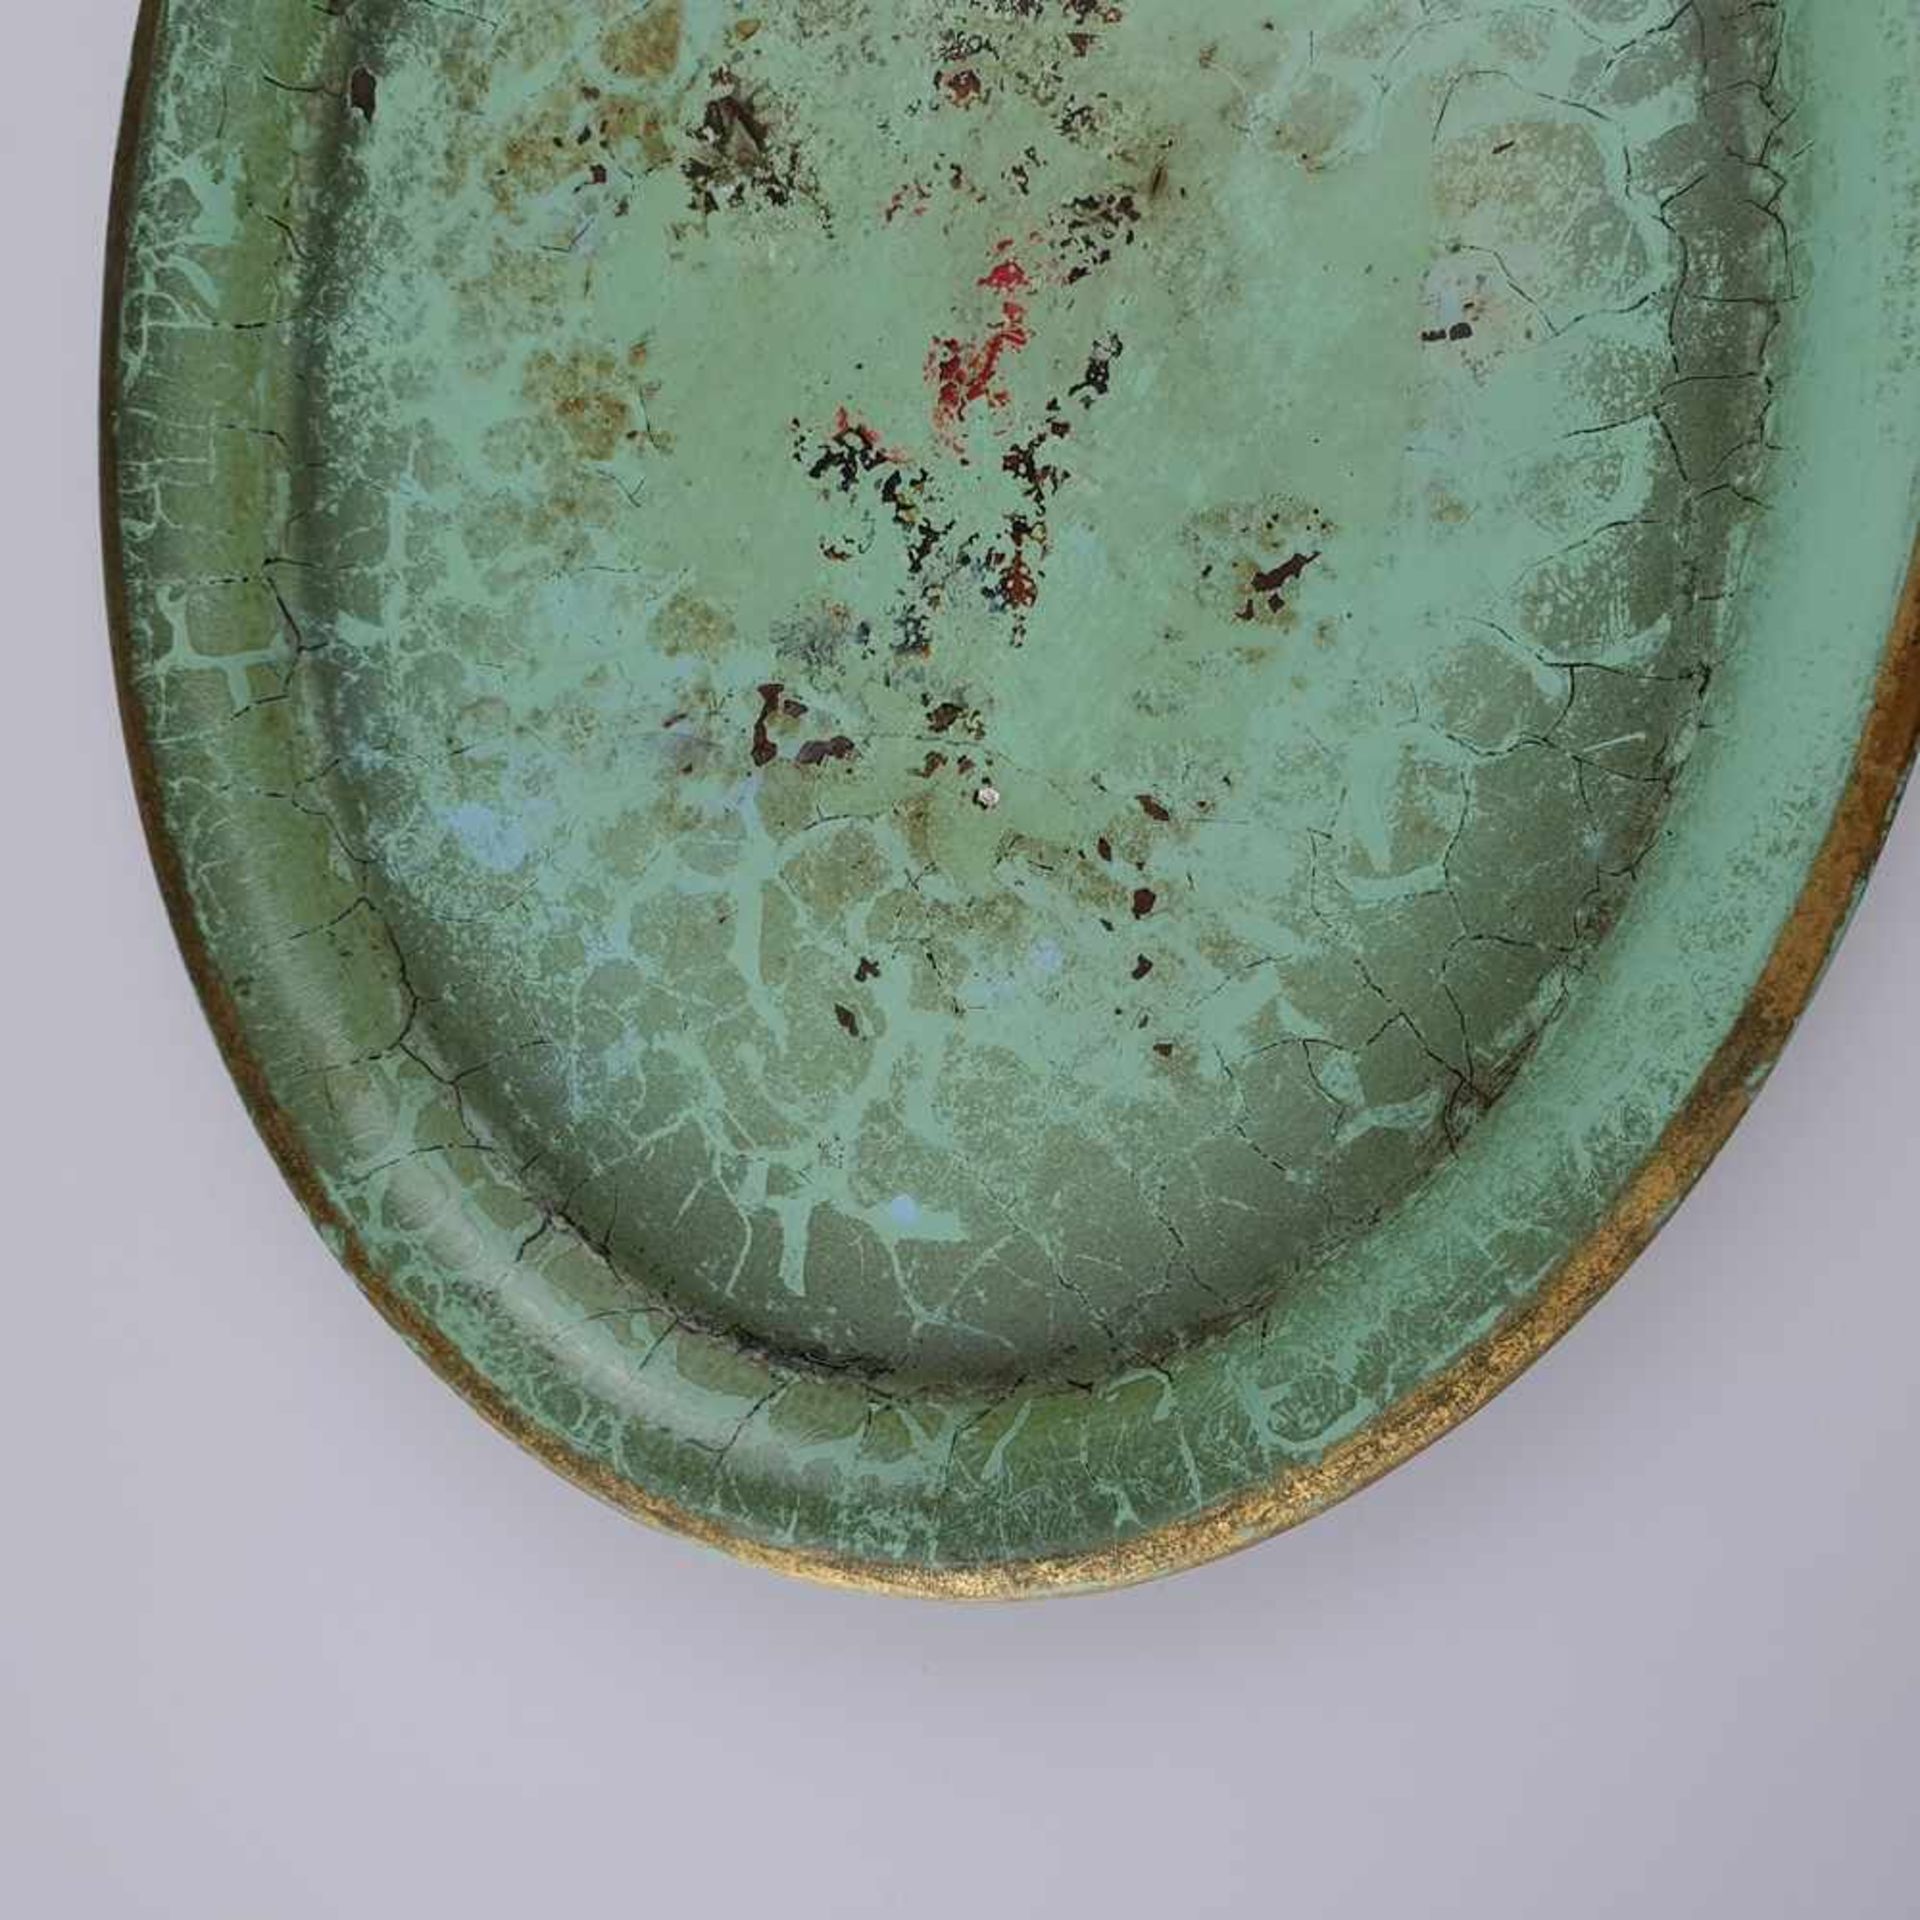 Ovales Tablett - Ruppelwerke Gotha, Entwurf wohl von Marianne Brandt, Metall, grün gefasst, - Bild 3 aus 5